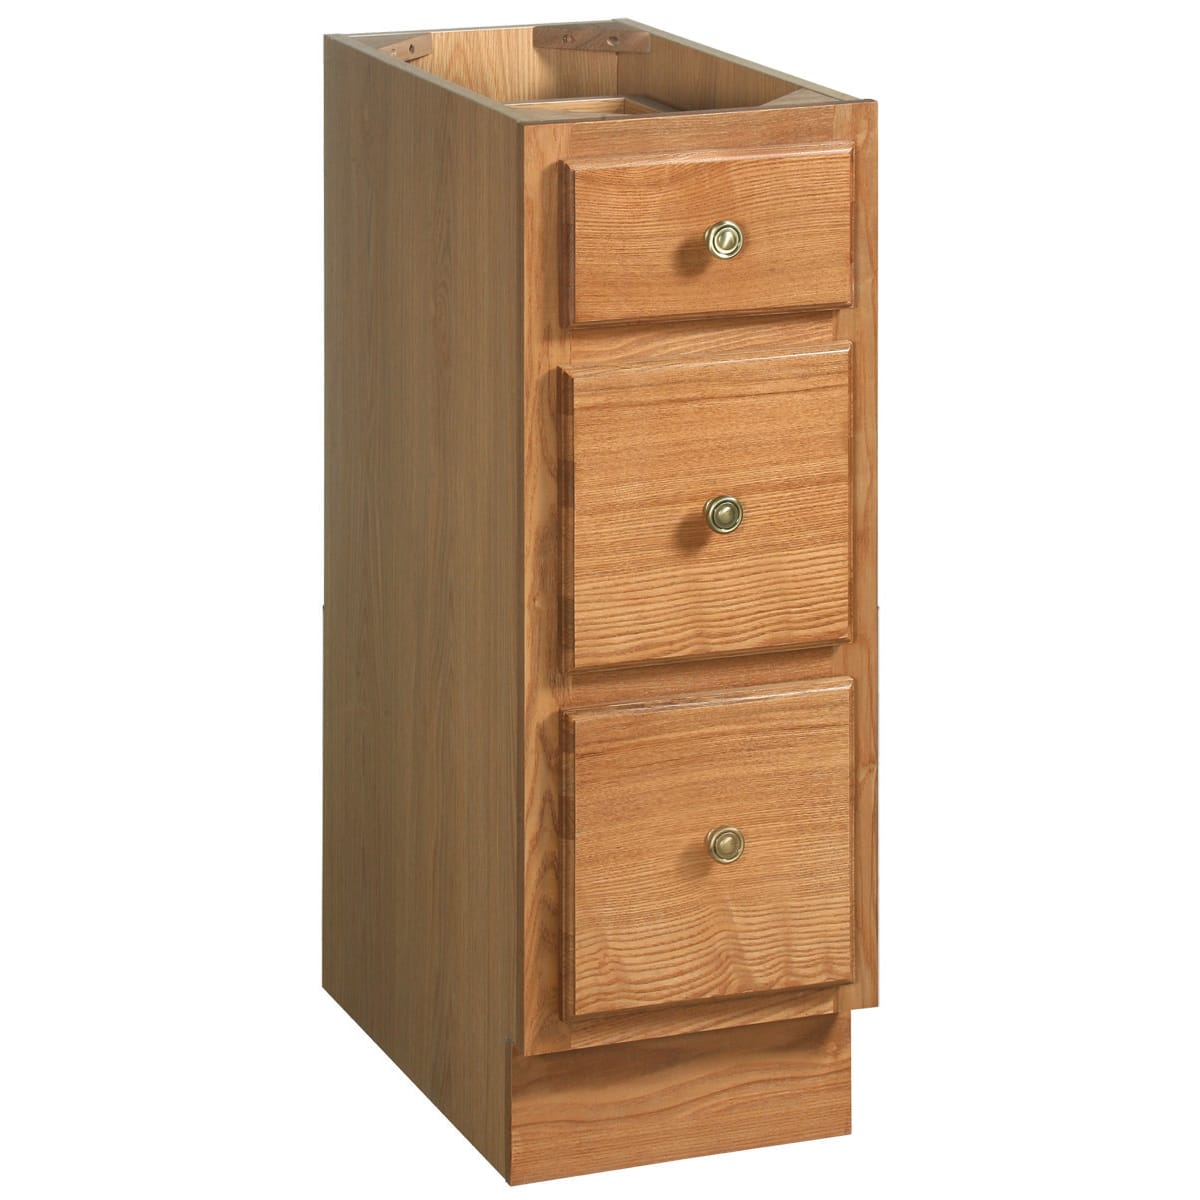 Wooden Bathroom Storage 3 Drawer Cupboard Bordeaux Oak Free Standing Unit